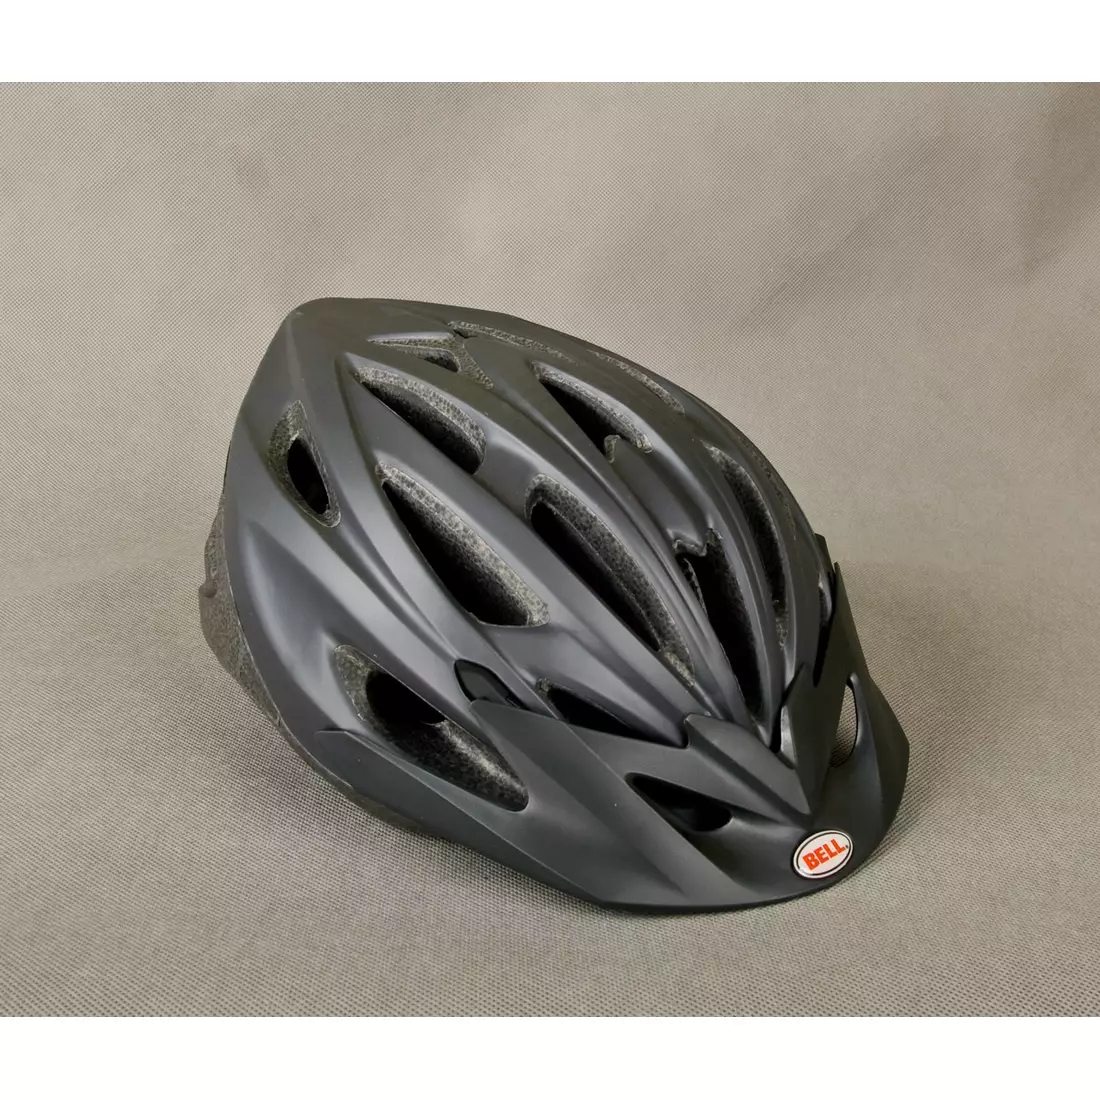 BELL bicycle helmet SOLAR FLARE black titanium